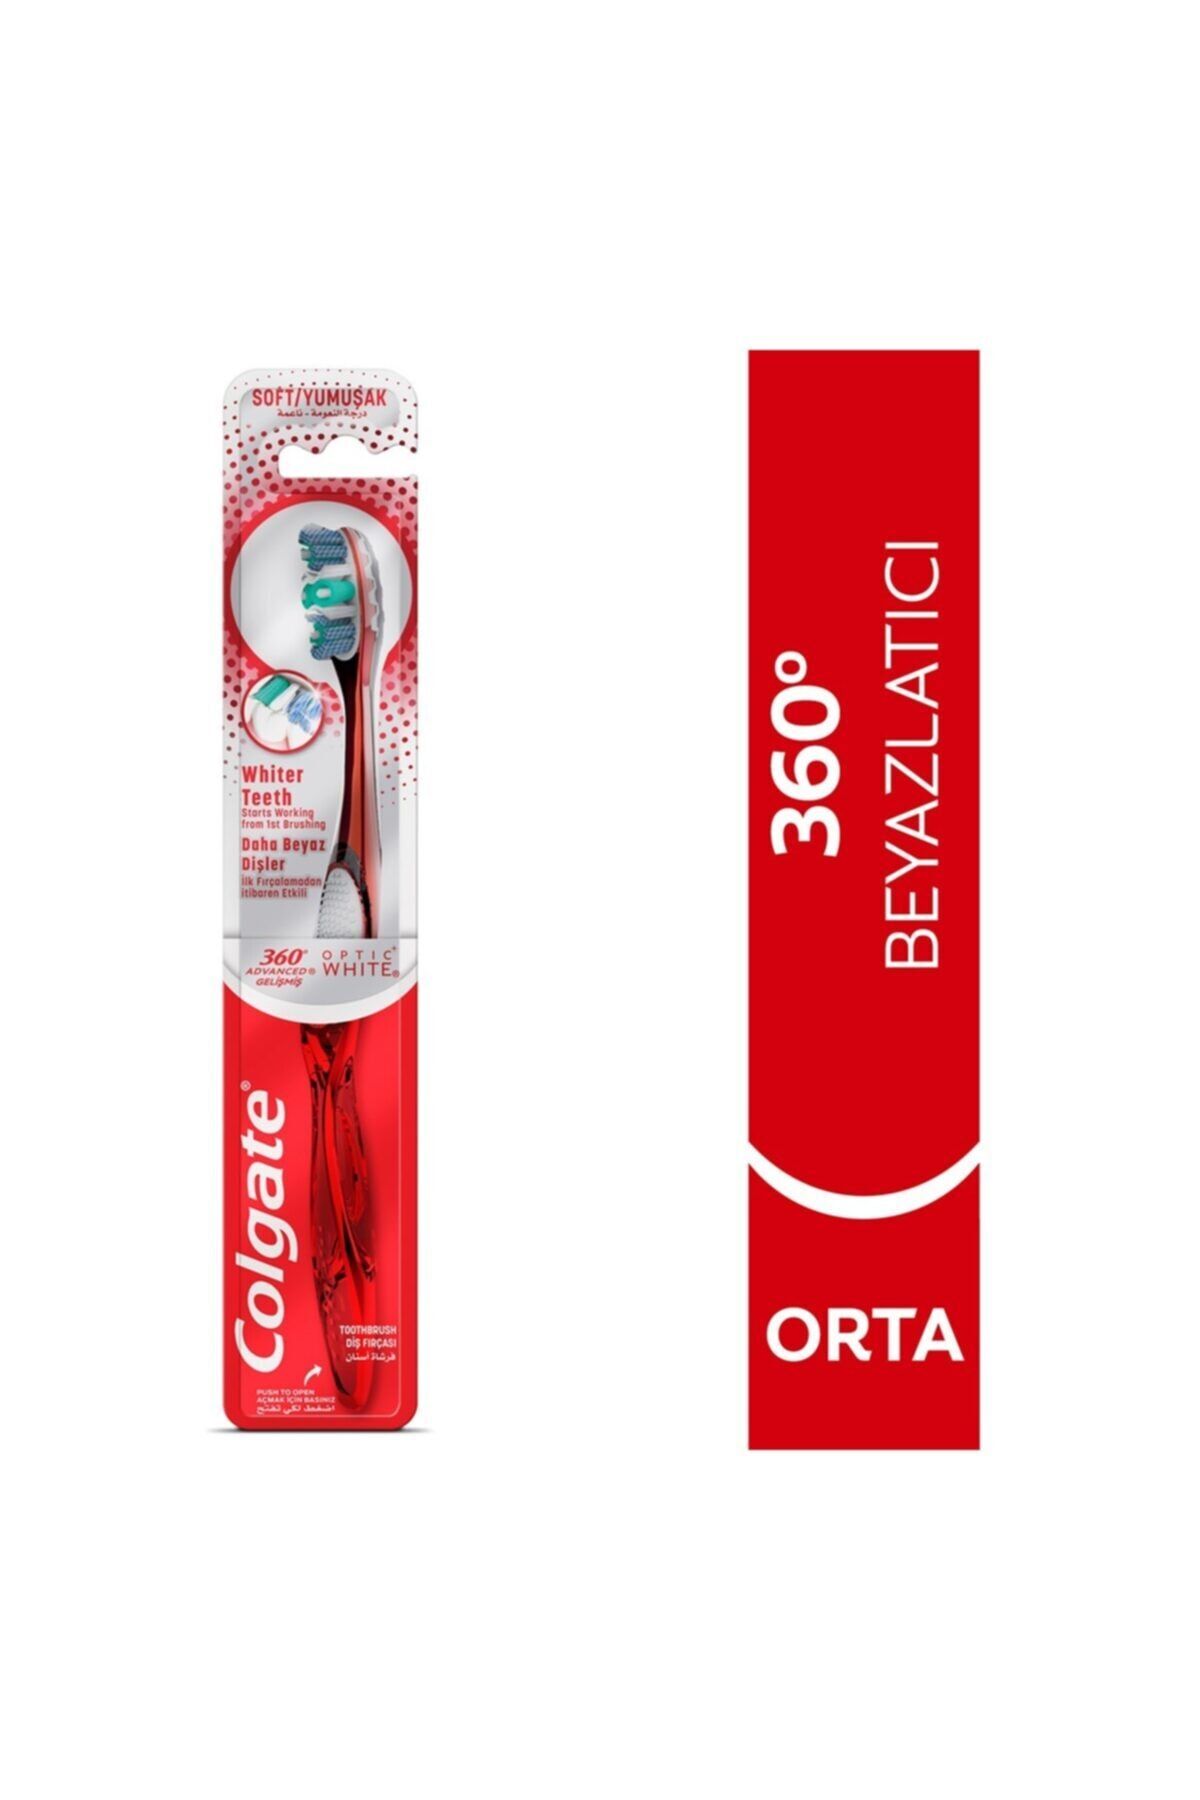 Colgate Marka: Diş Fırçası 360 Advanced Optic White Kategori: Manuel Diş Fırçası